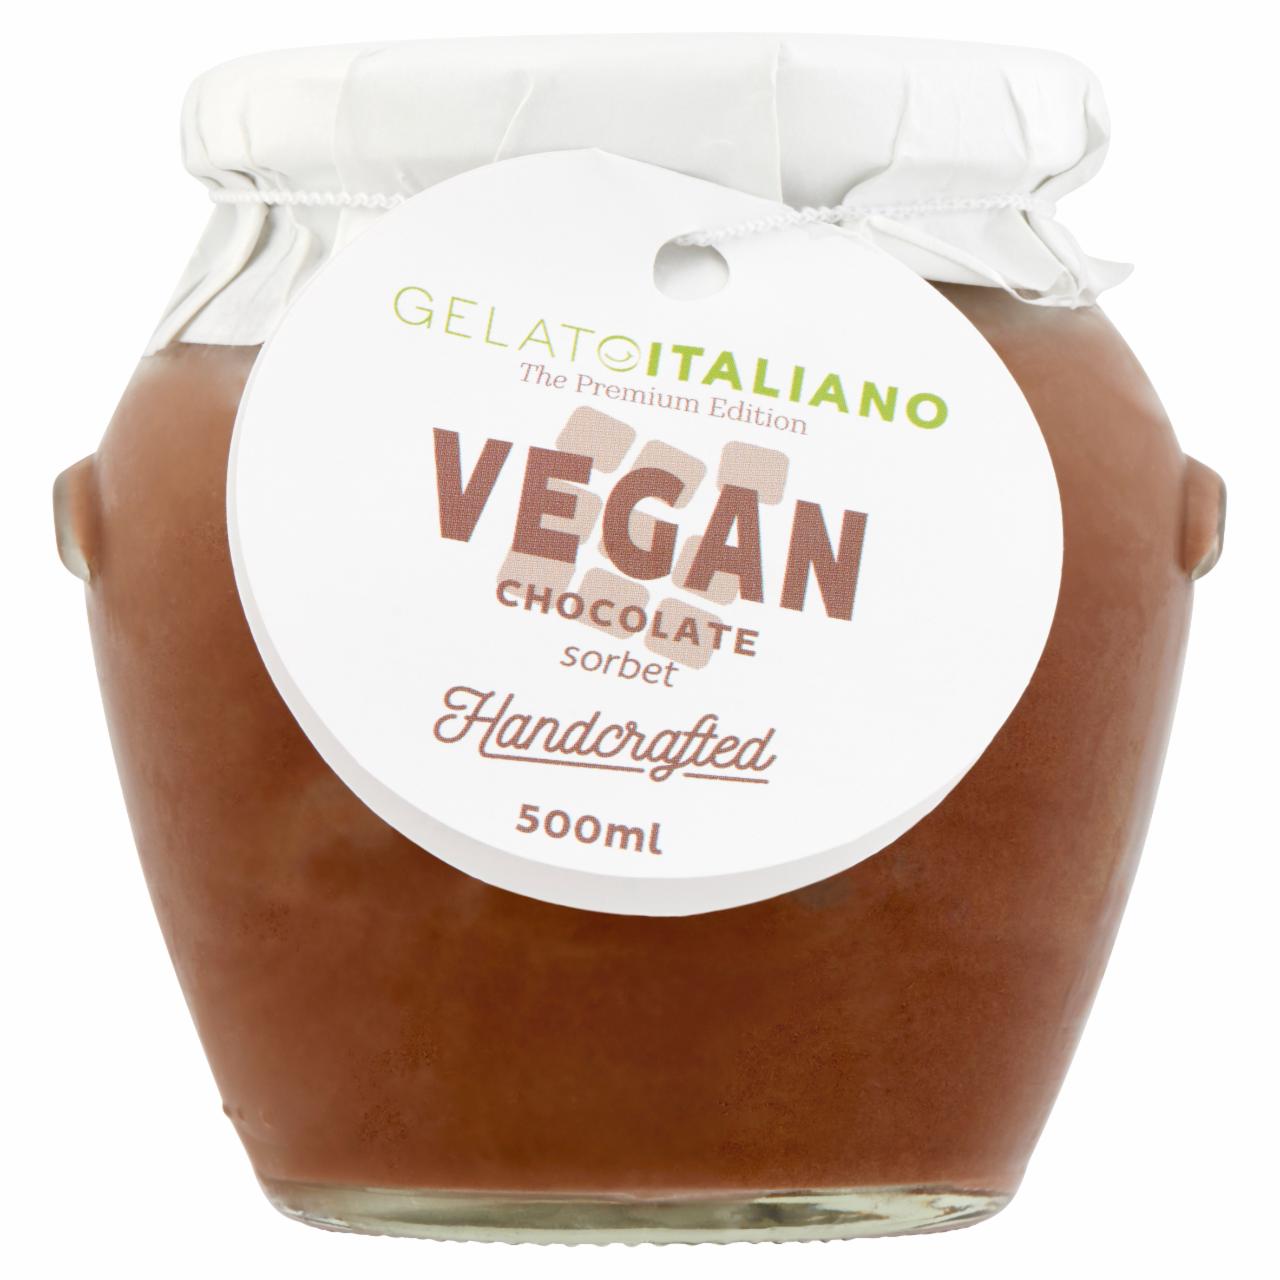 Képek - Gelato Italiano vegán csokoládé sorbet 500 ml